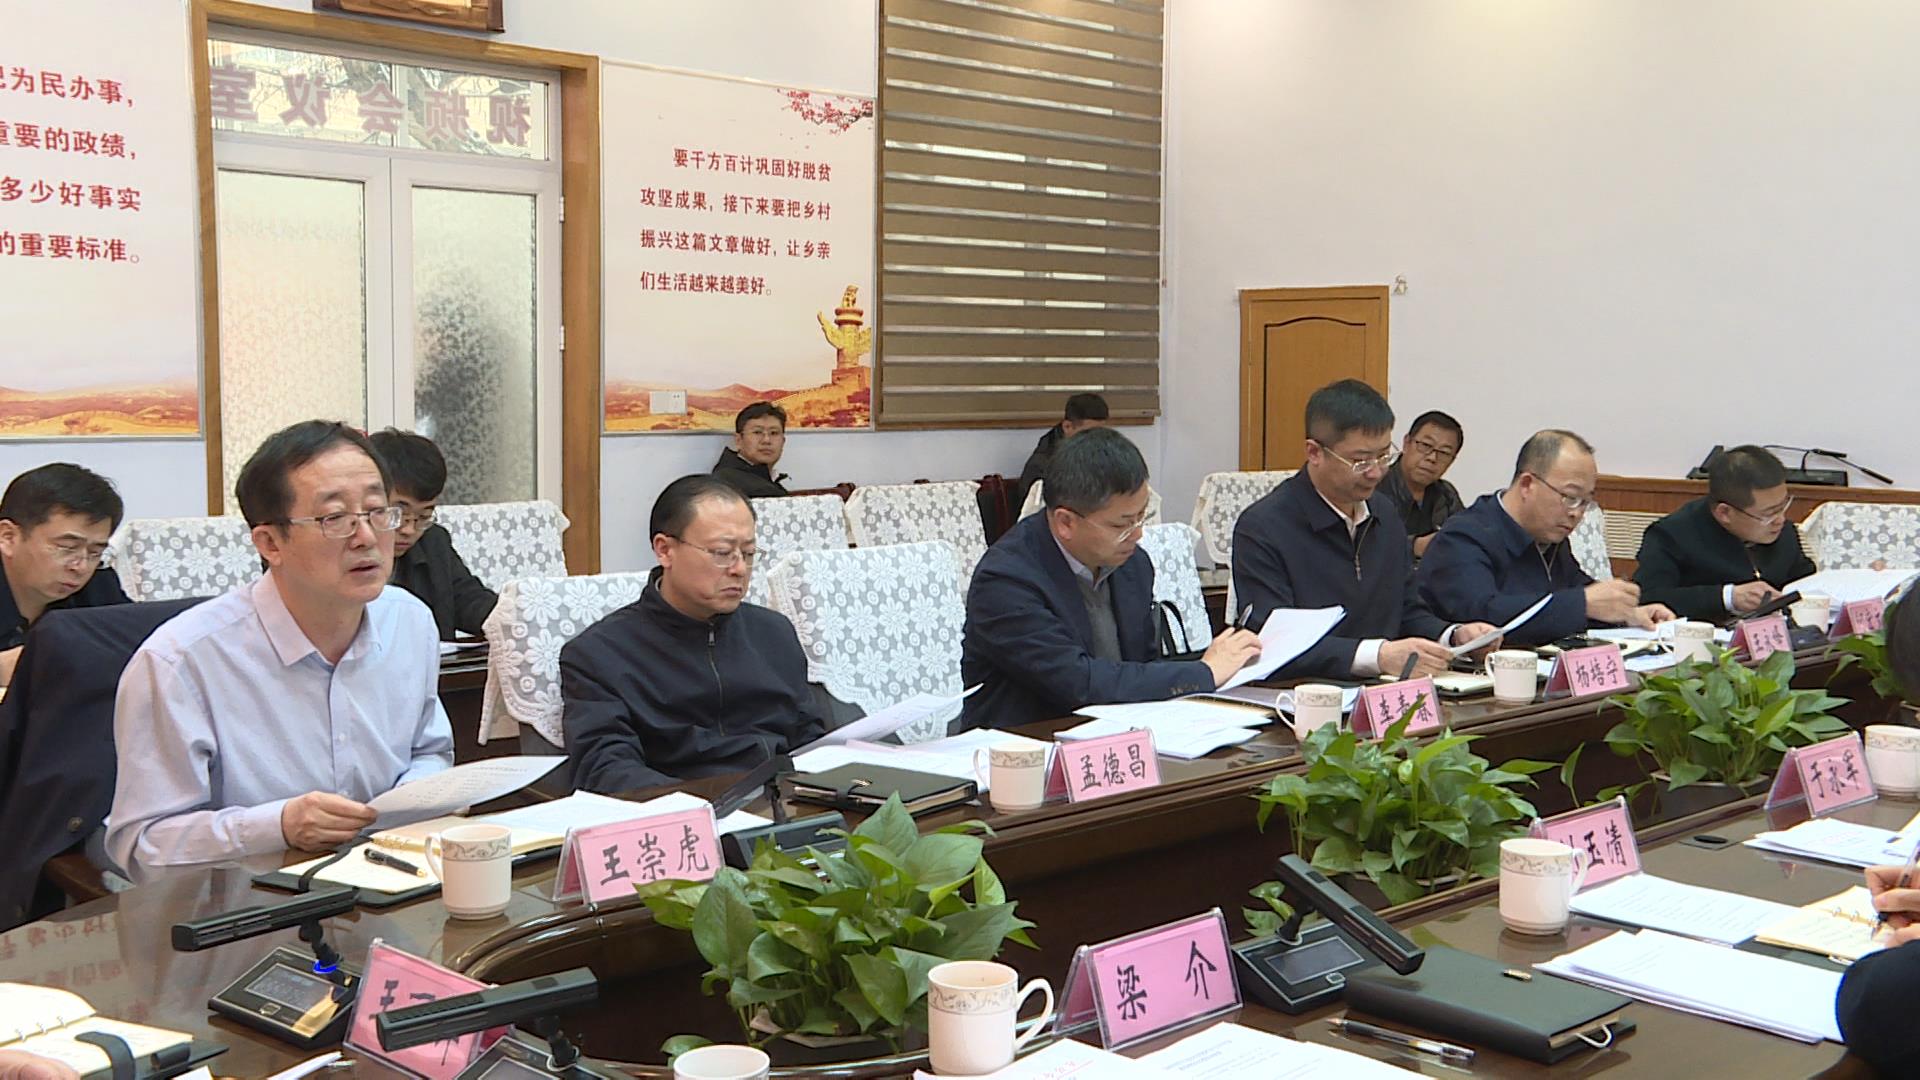 会议审议了《广灵县政法队伍教育整顿实施方案》,并研究调整广灵县